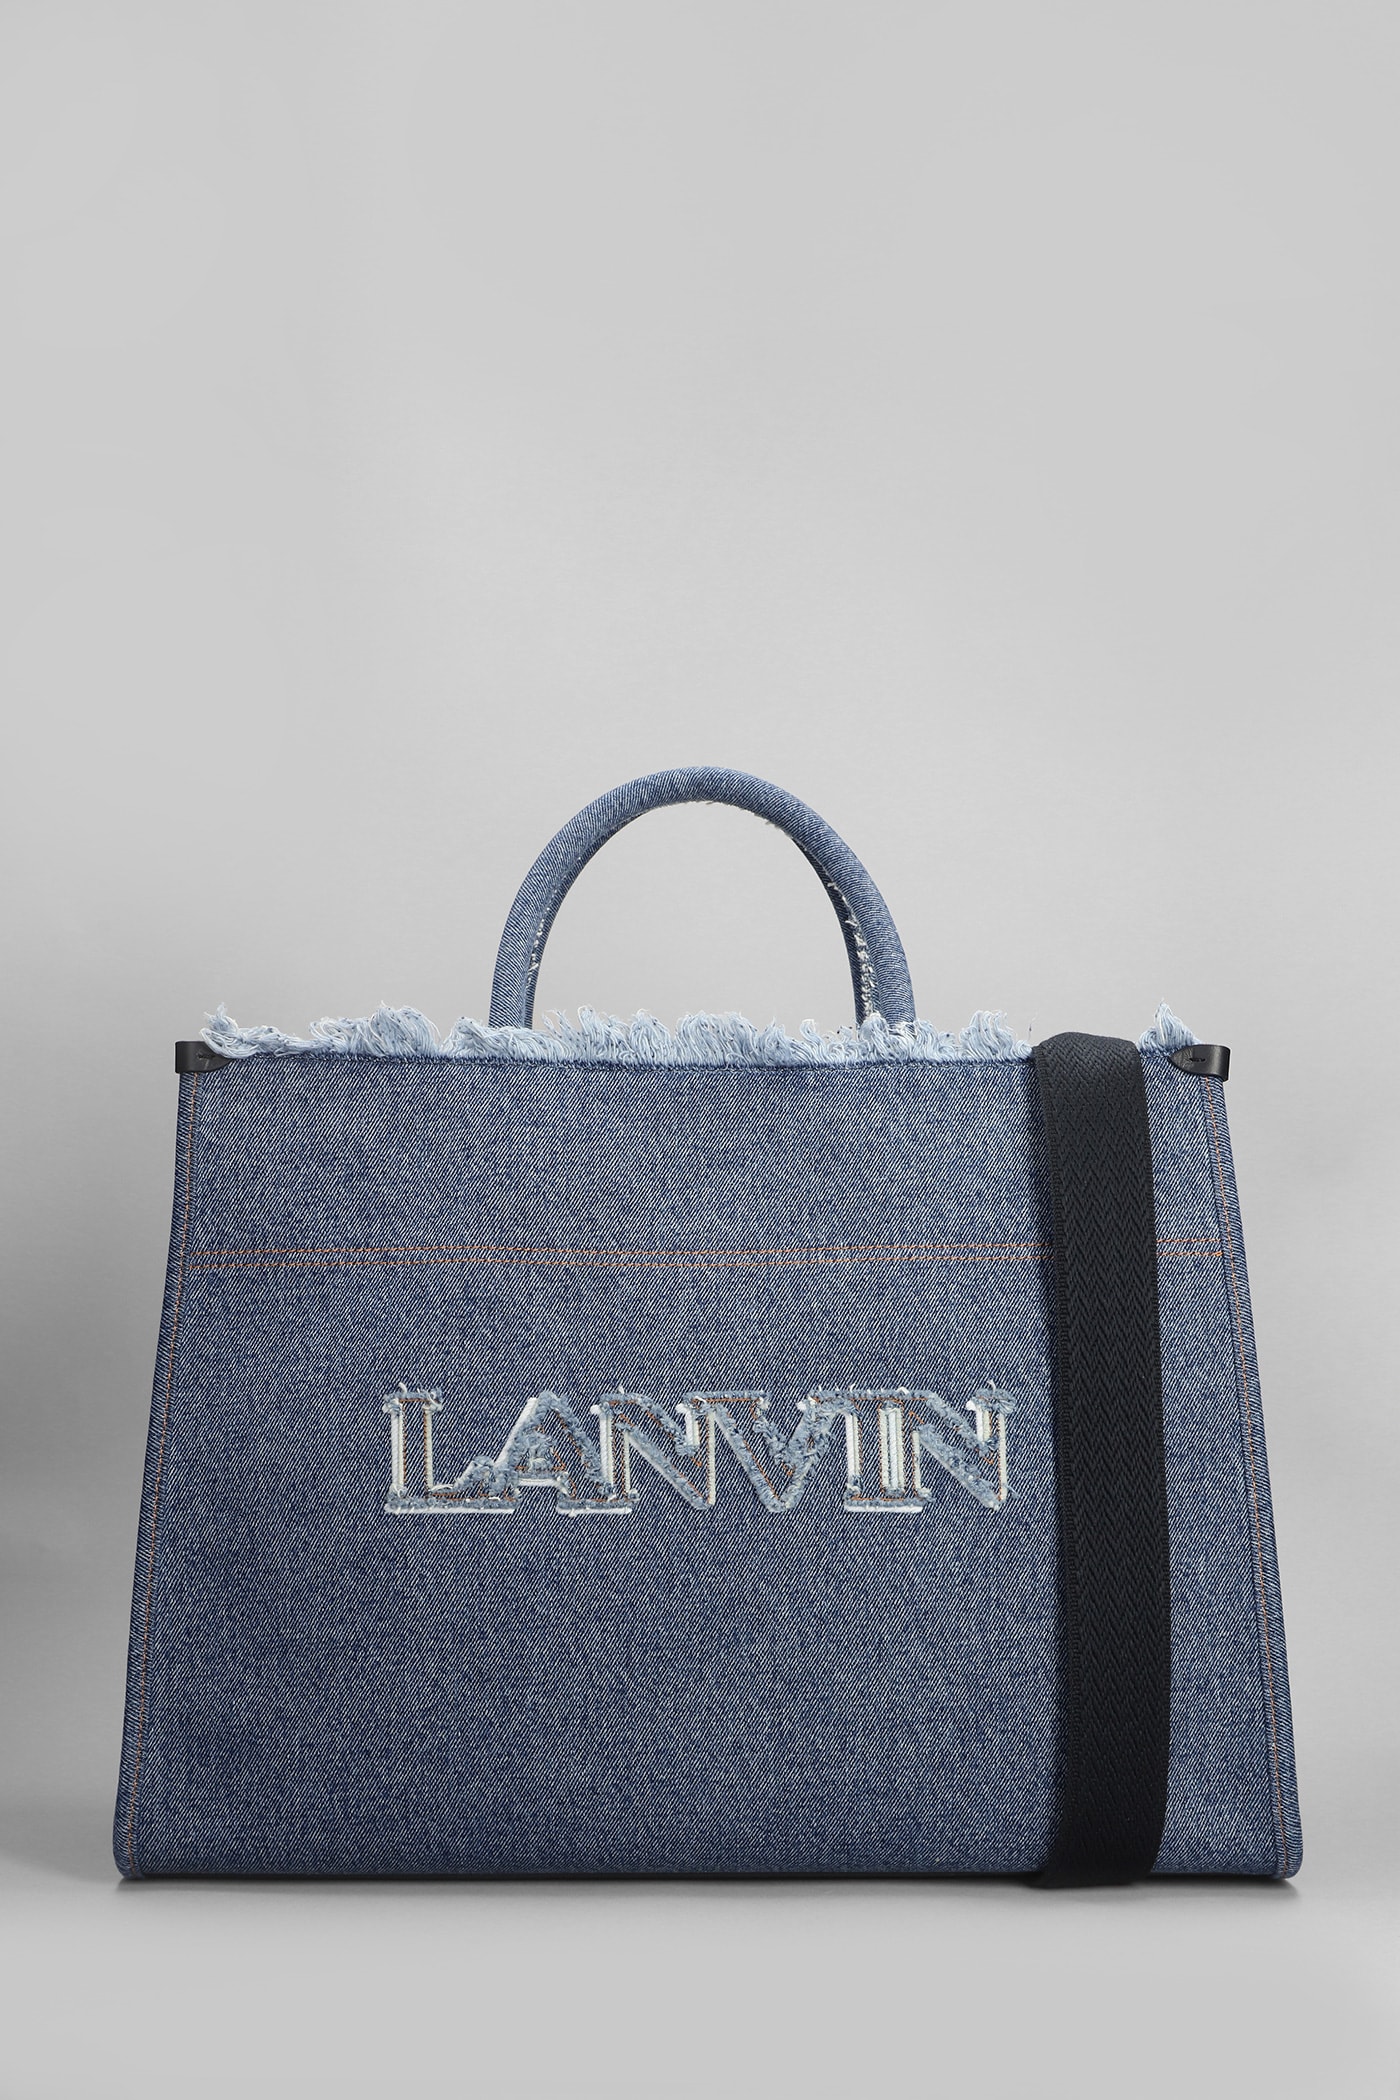 Lanvin Tote In Blue Cotton In Black